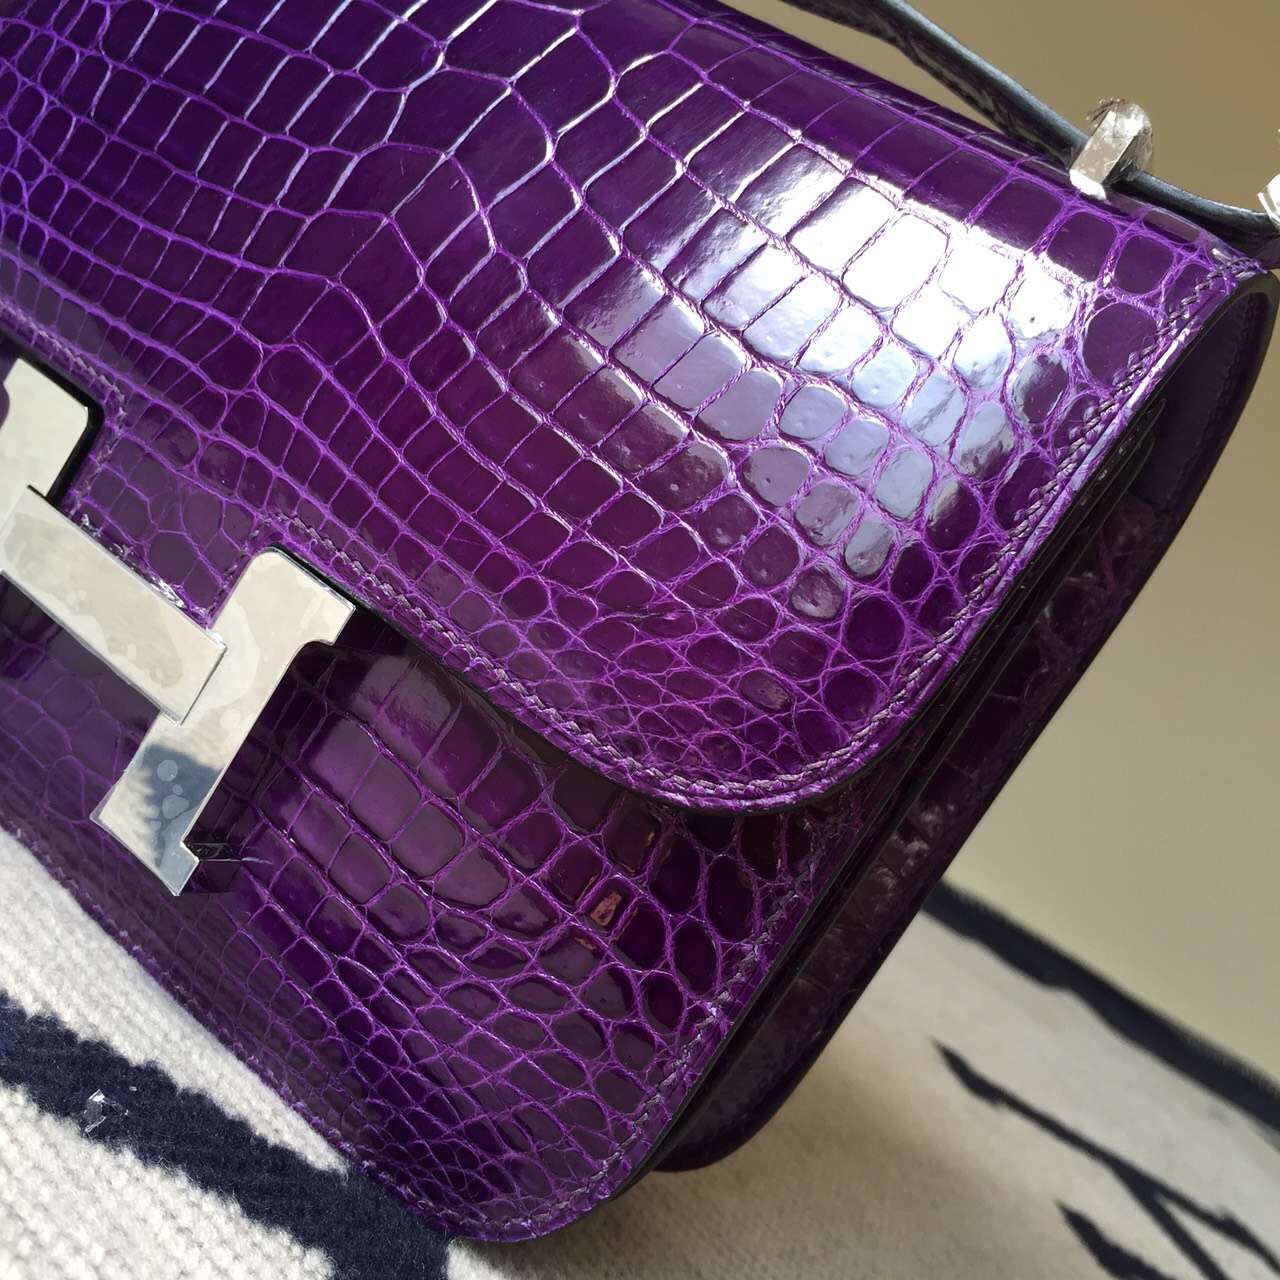 Popular Hermes Constance Bag 19cm in 9G Violet Crocodile Shiny Leather